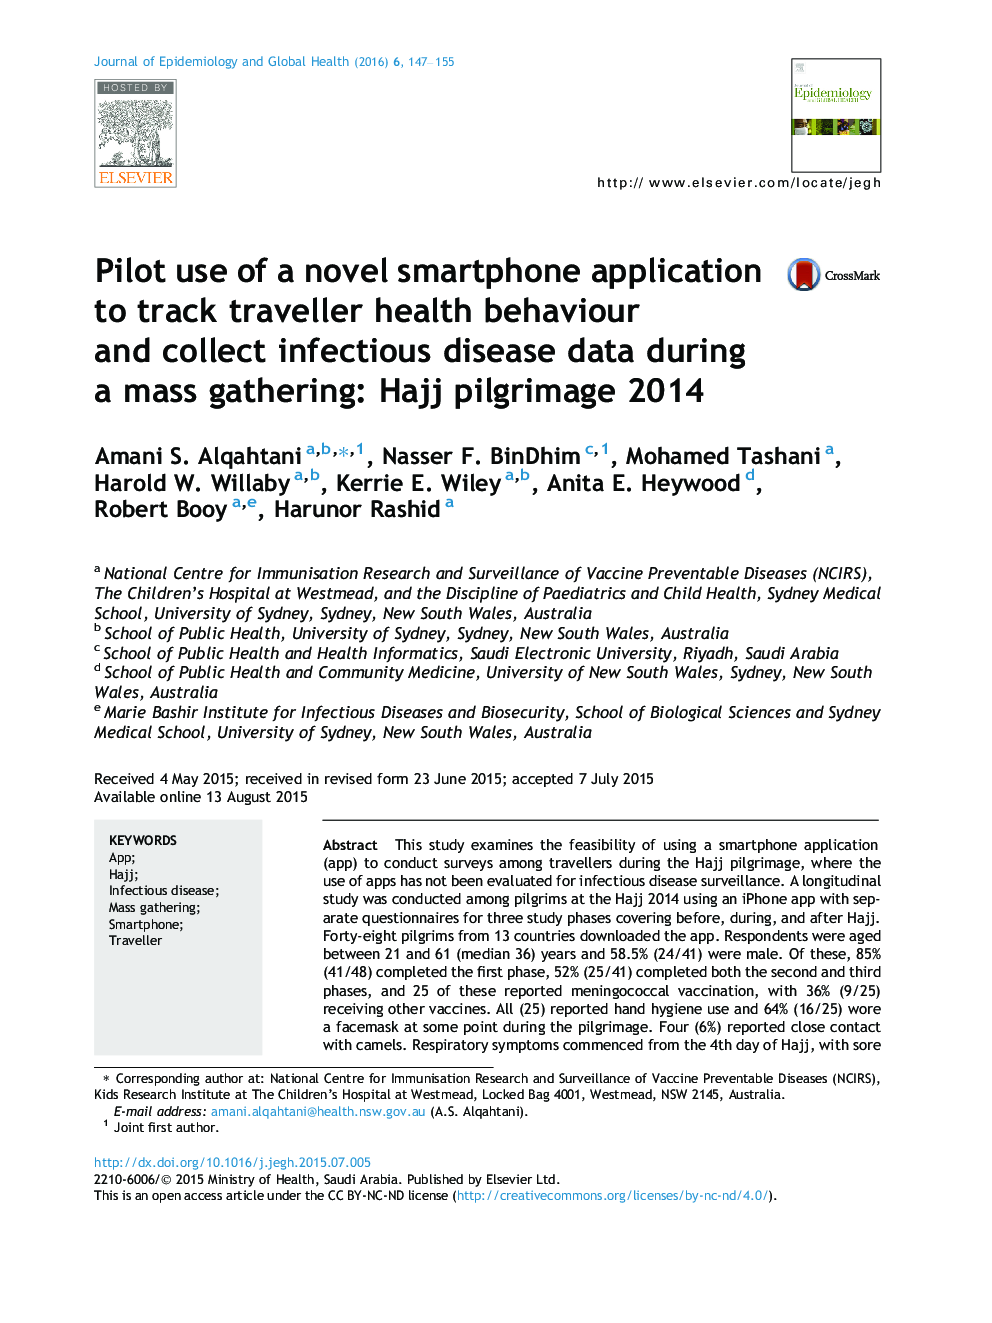 استفاده آزمایشی از یک کاربرد جدید گوشی های هوشمند برای ردیابی رفتار بهداشتی مسافر و جمع آوری داده‌های بیماری های عفونی در یک اجتماع انبوه: حج 2014